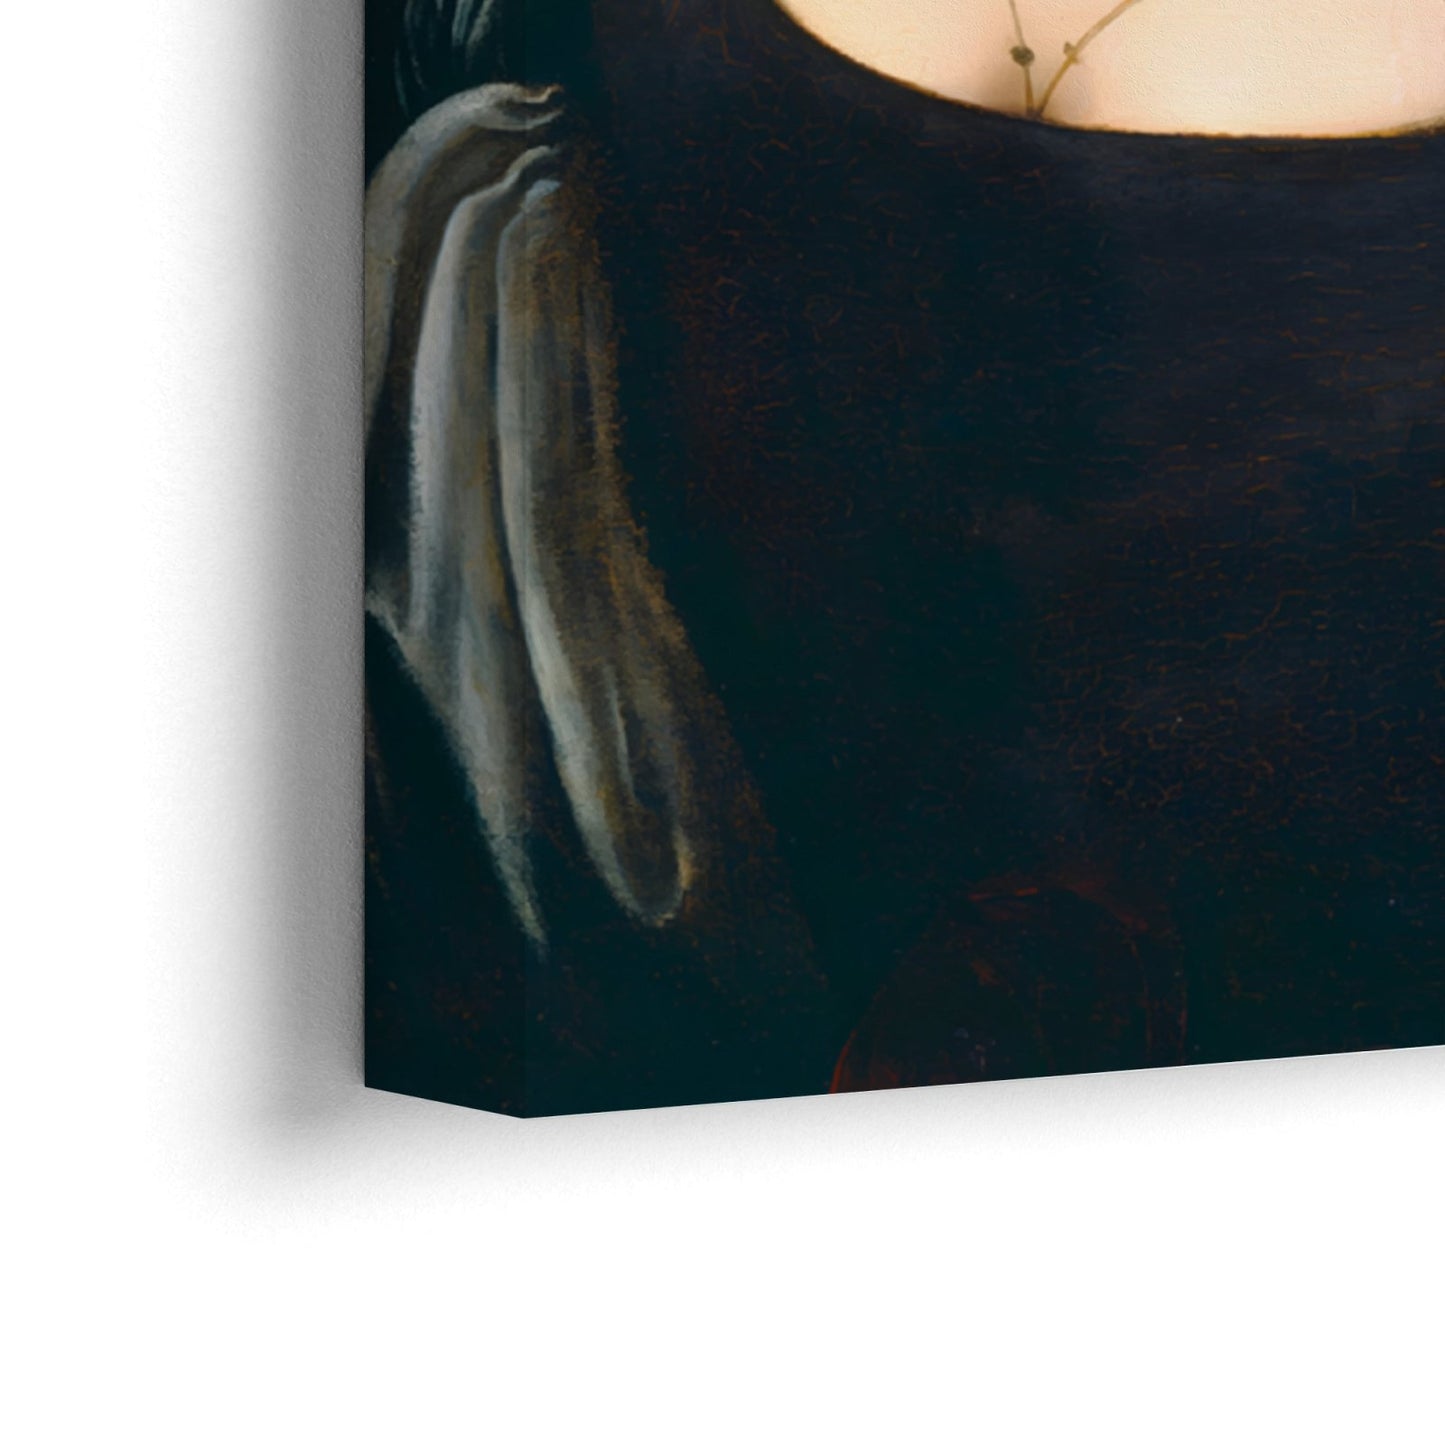 Portræt af en ung kvinde, Leonardo Da Vinci